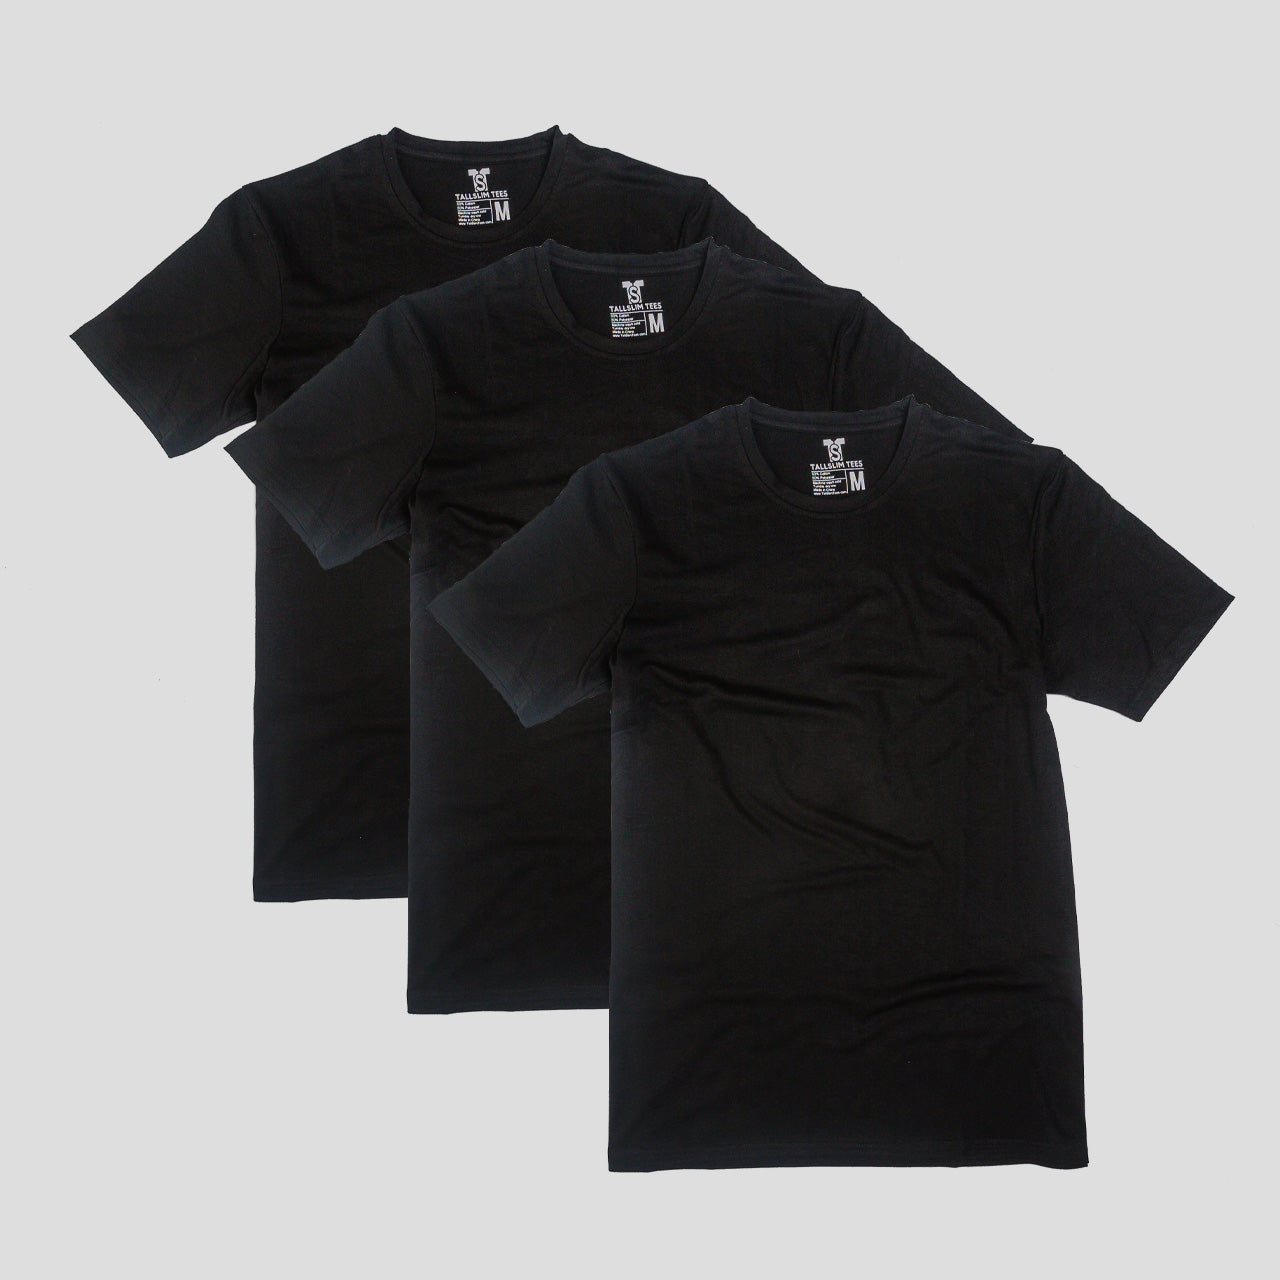 3 Pack - Black Crew Neck Shirt for Tall Slim Men